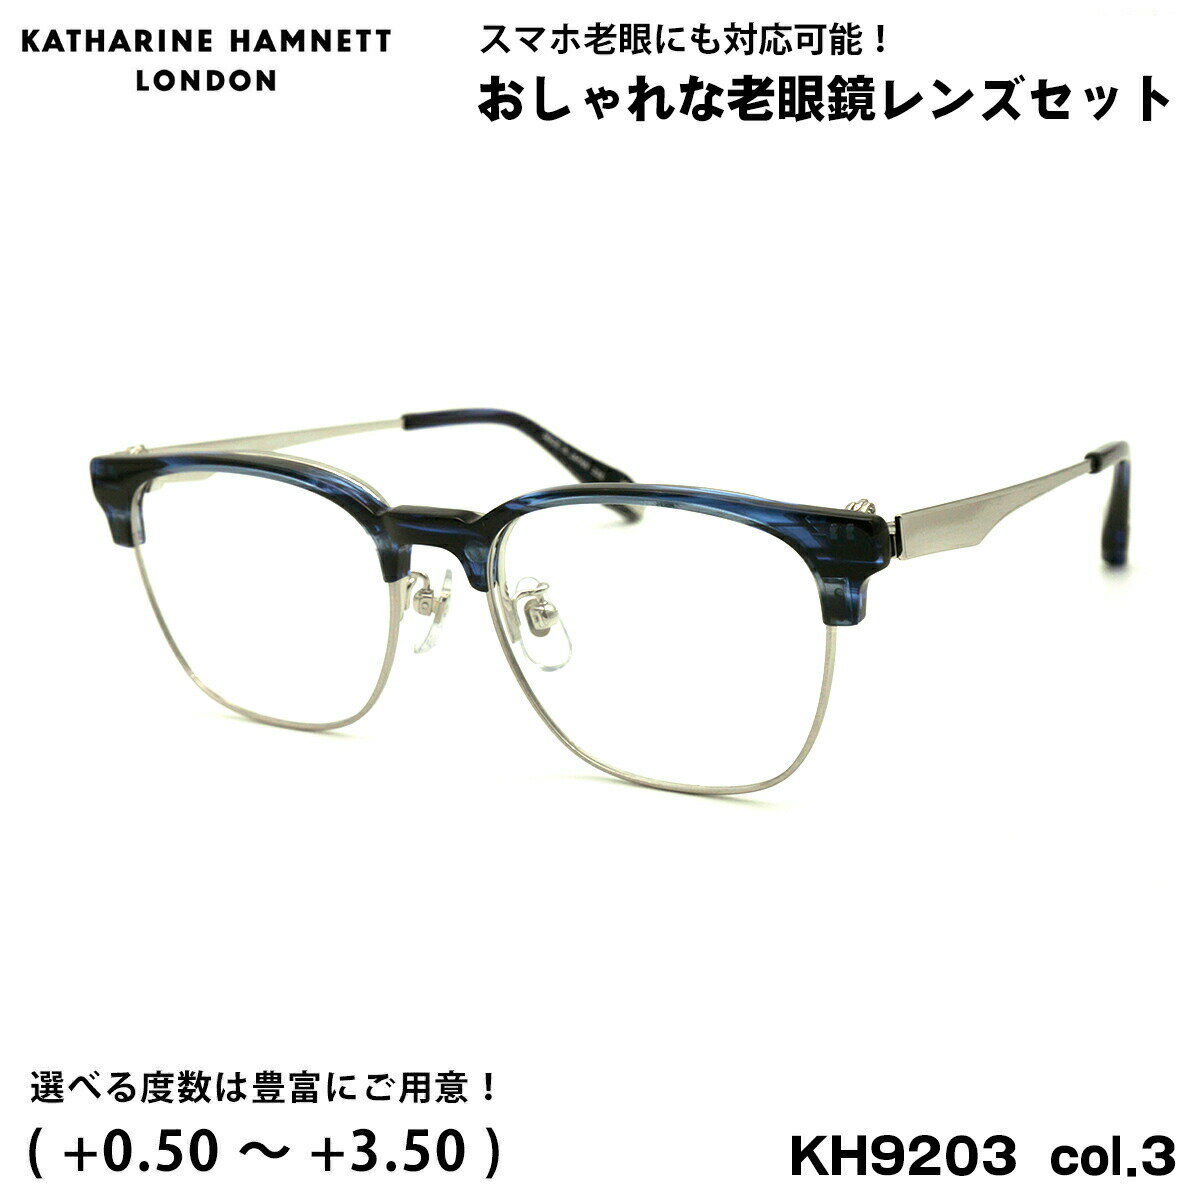 キャサリンハムネット 老眼鏡 KH9203 col.3 53mm KATHARINE HAMNETT UVカット ブルーライトカット 跳ね上げ